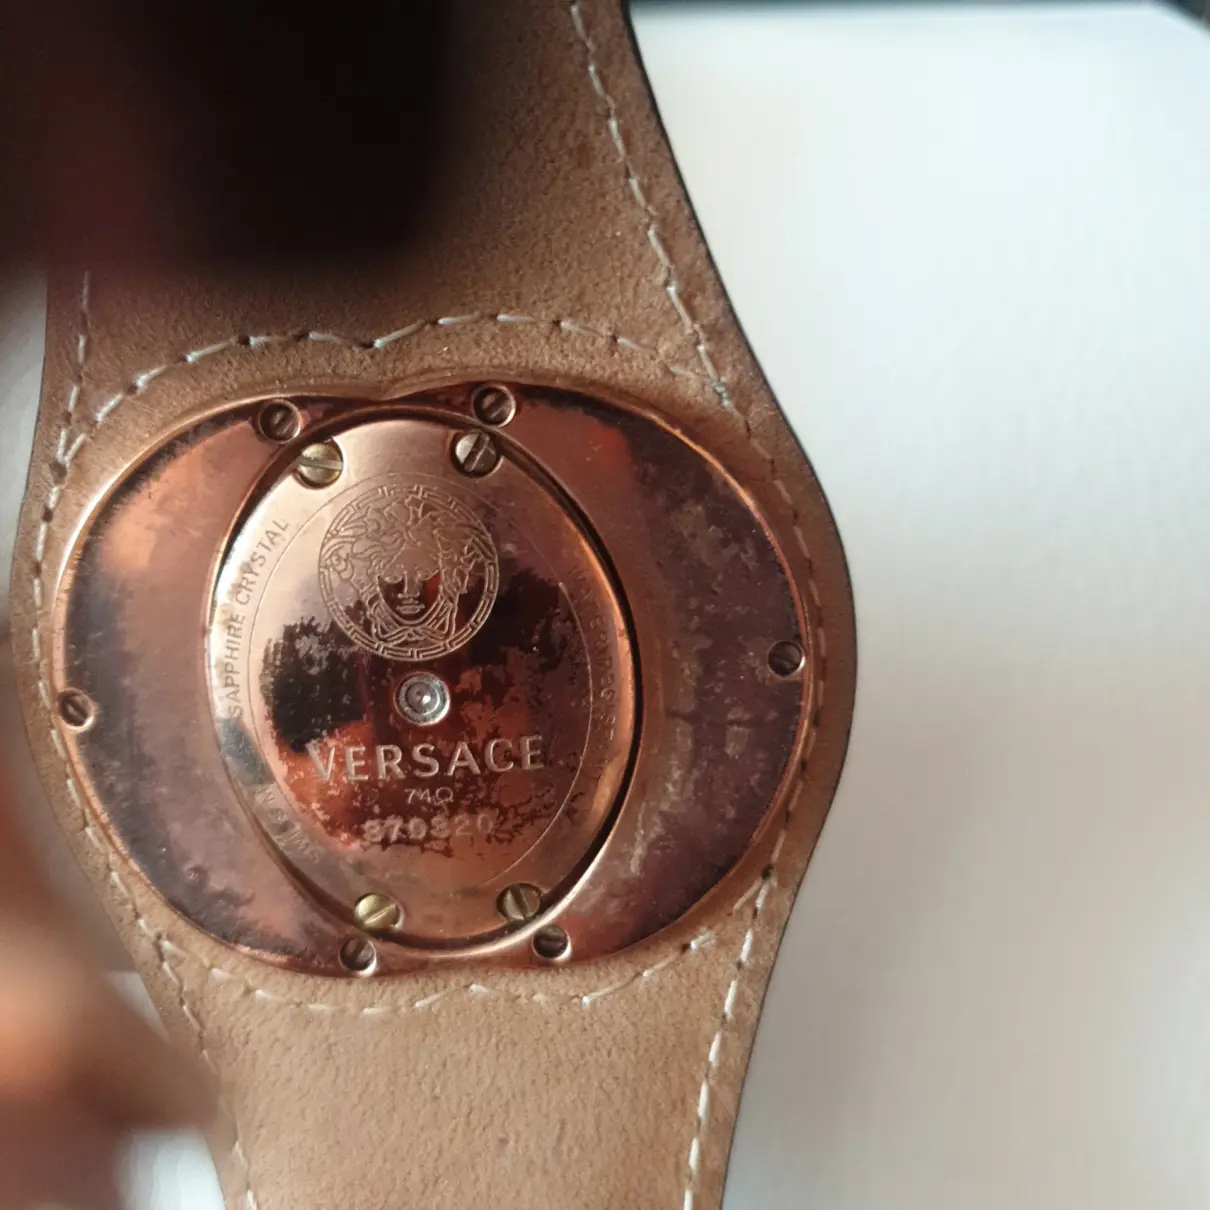 Buy Versace Pink gold watch online